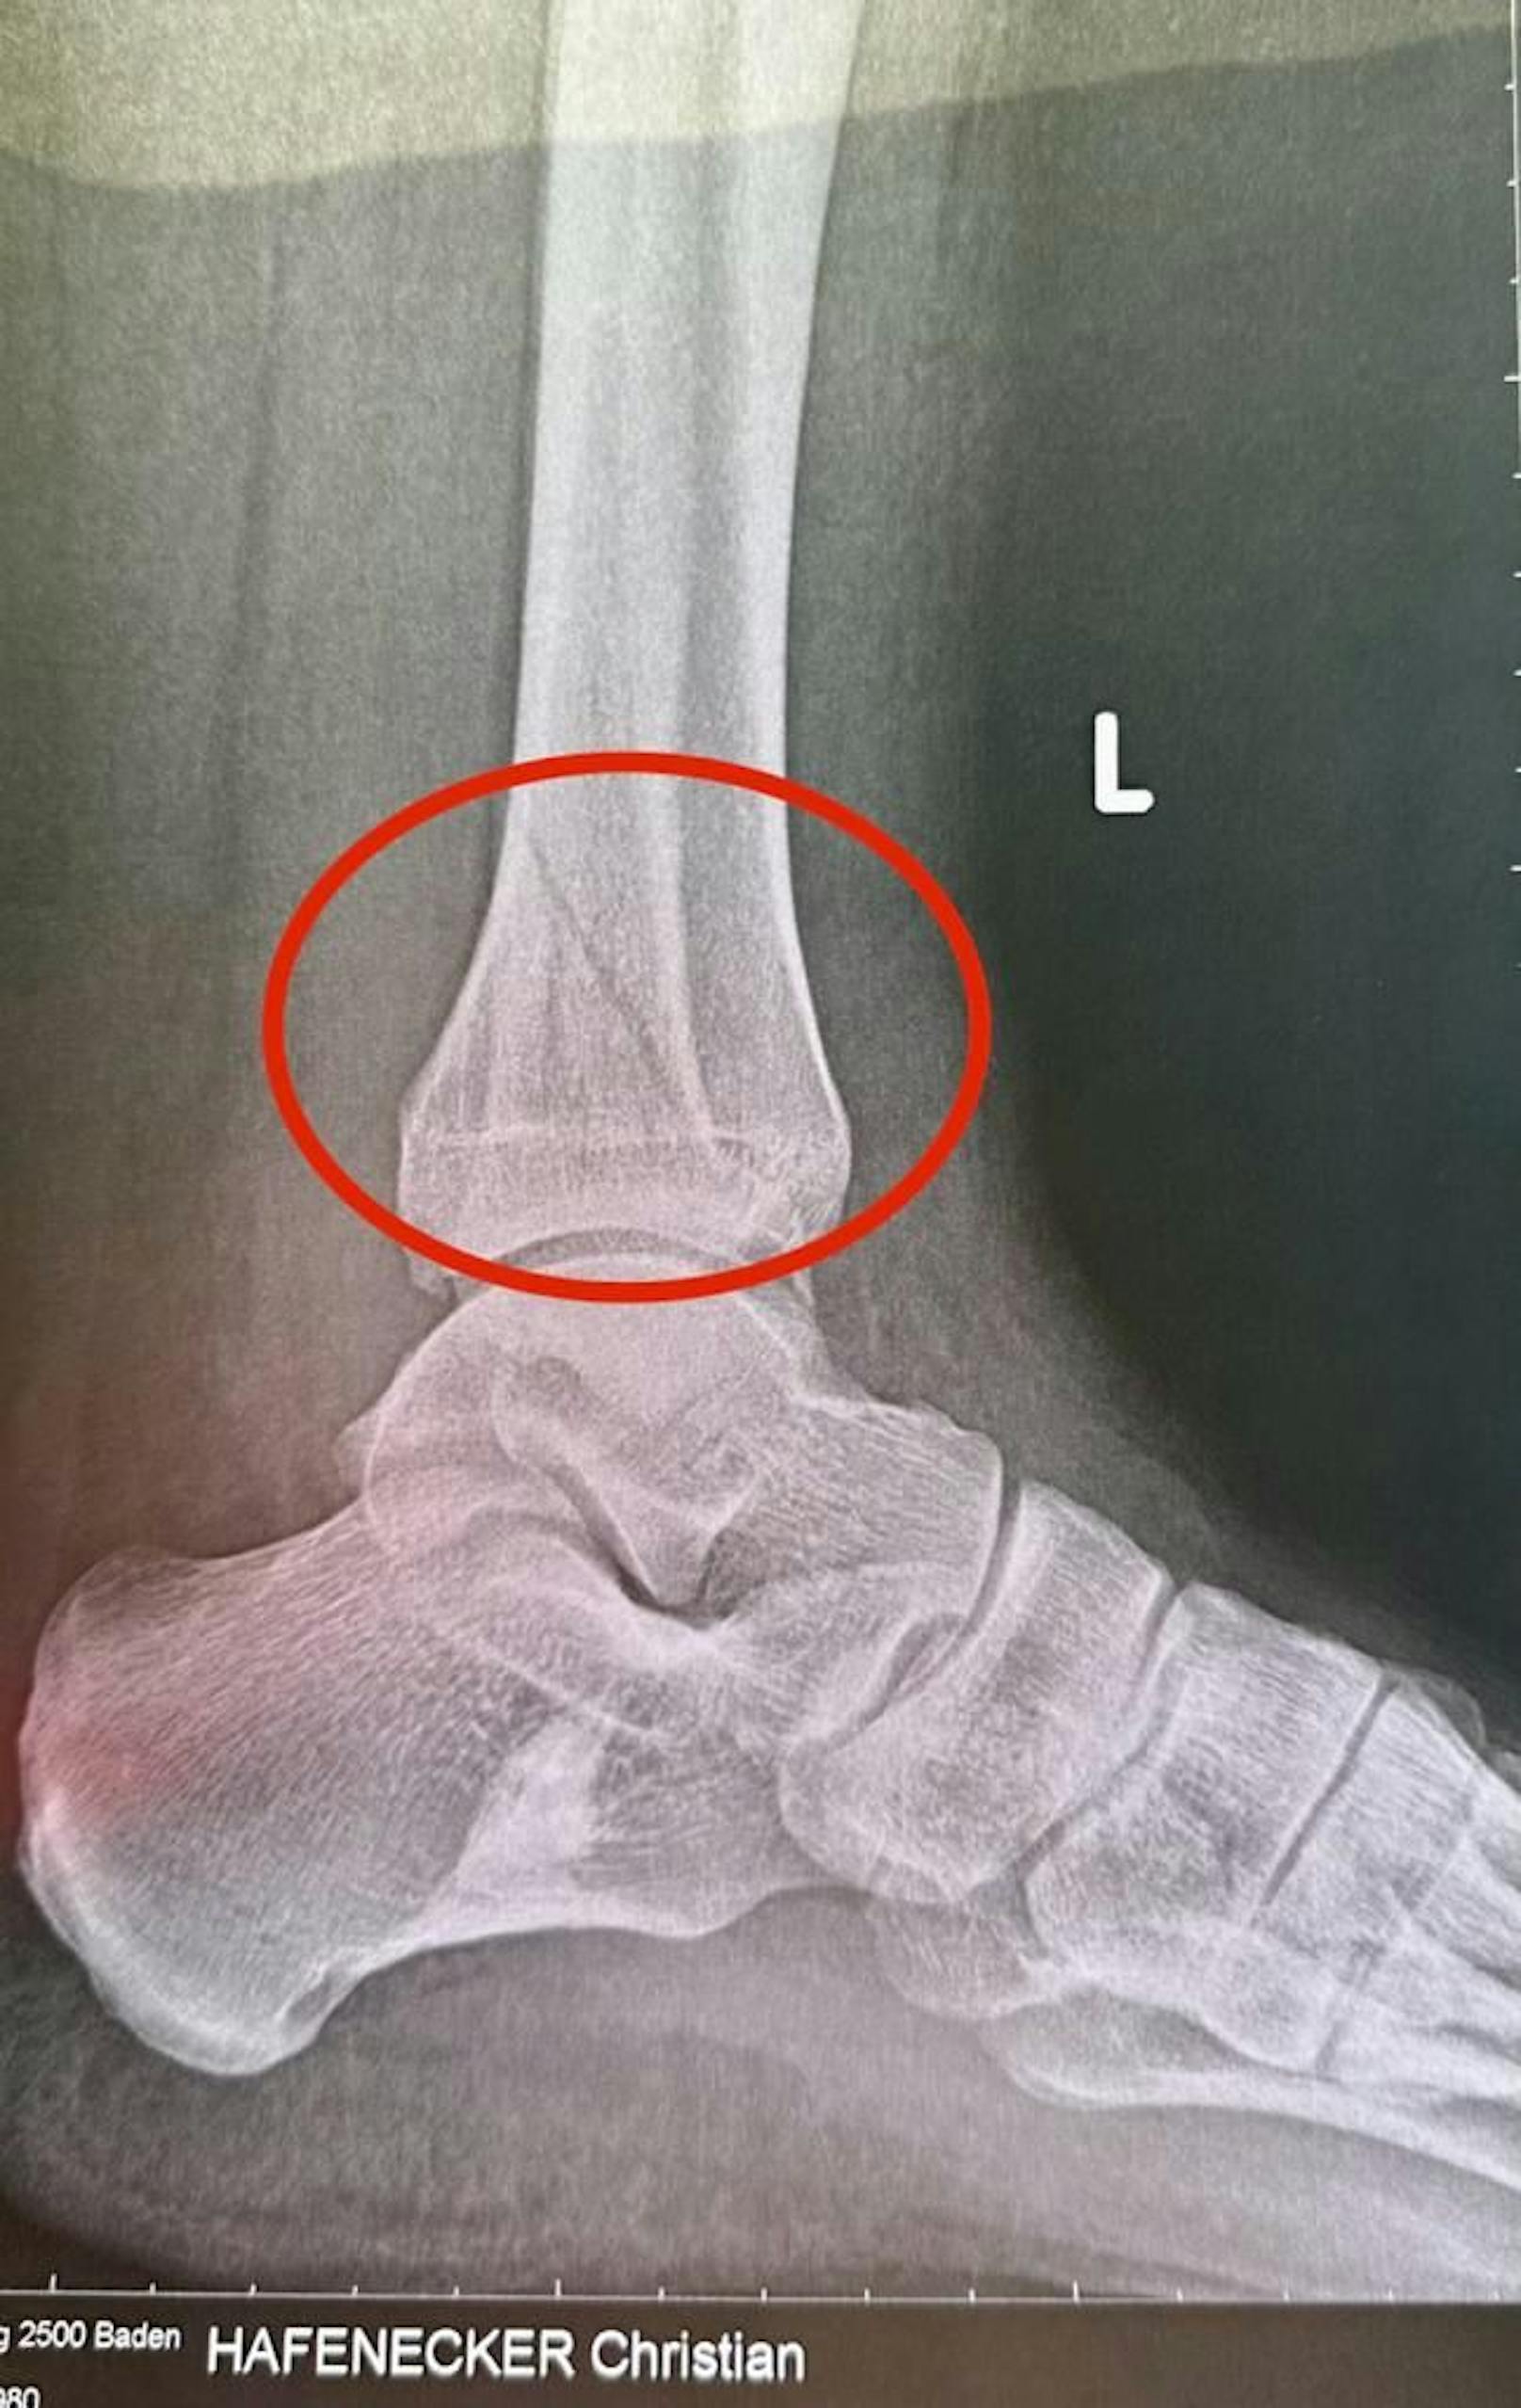 FPÖ-Generalsekretär Hafenecker hat sich Bein gebrochen - das Röntgenbild